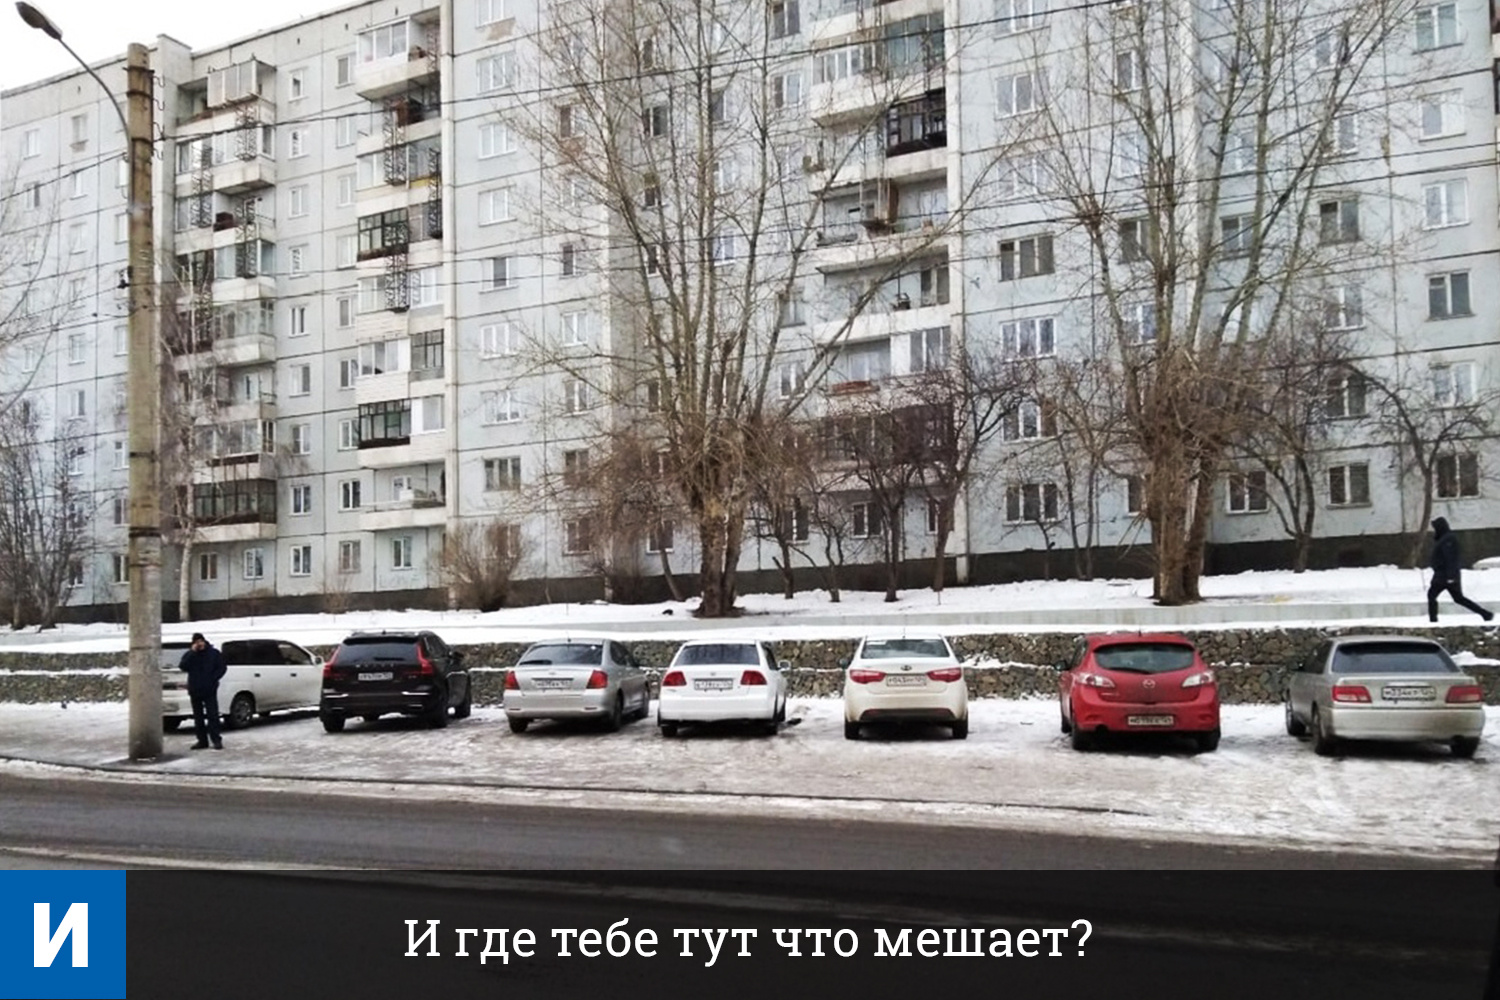 За парковку на тротуаре по ч. 3 ст. 12.19 КоАП РФ предусмотрен штраф 1000 рублей